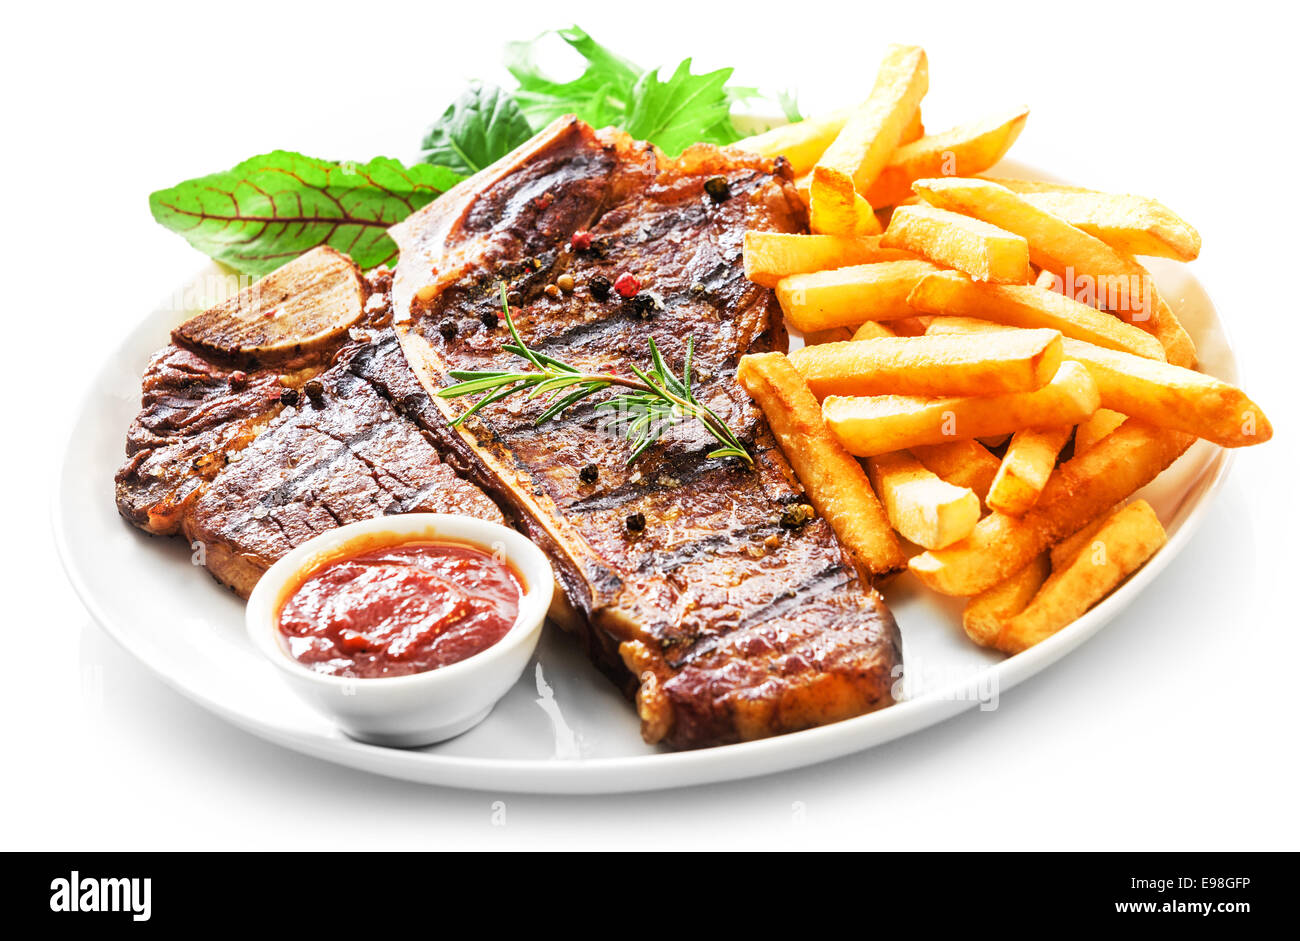 L'aloyau grillé tendre ou t-bone steak servi avec des frites dorées et salade d'herbes fraîches accompagnées d'un barbecue ou sauce ketchup aux tomates Banque D'Images